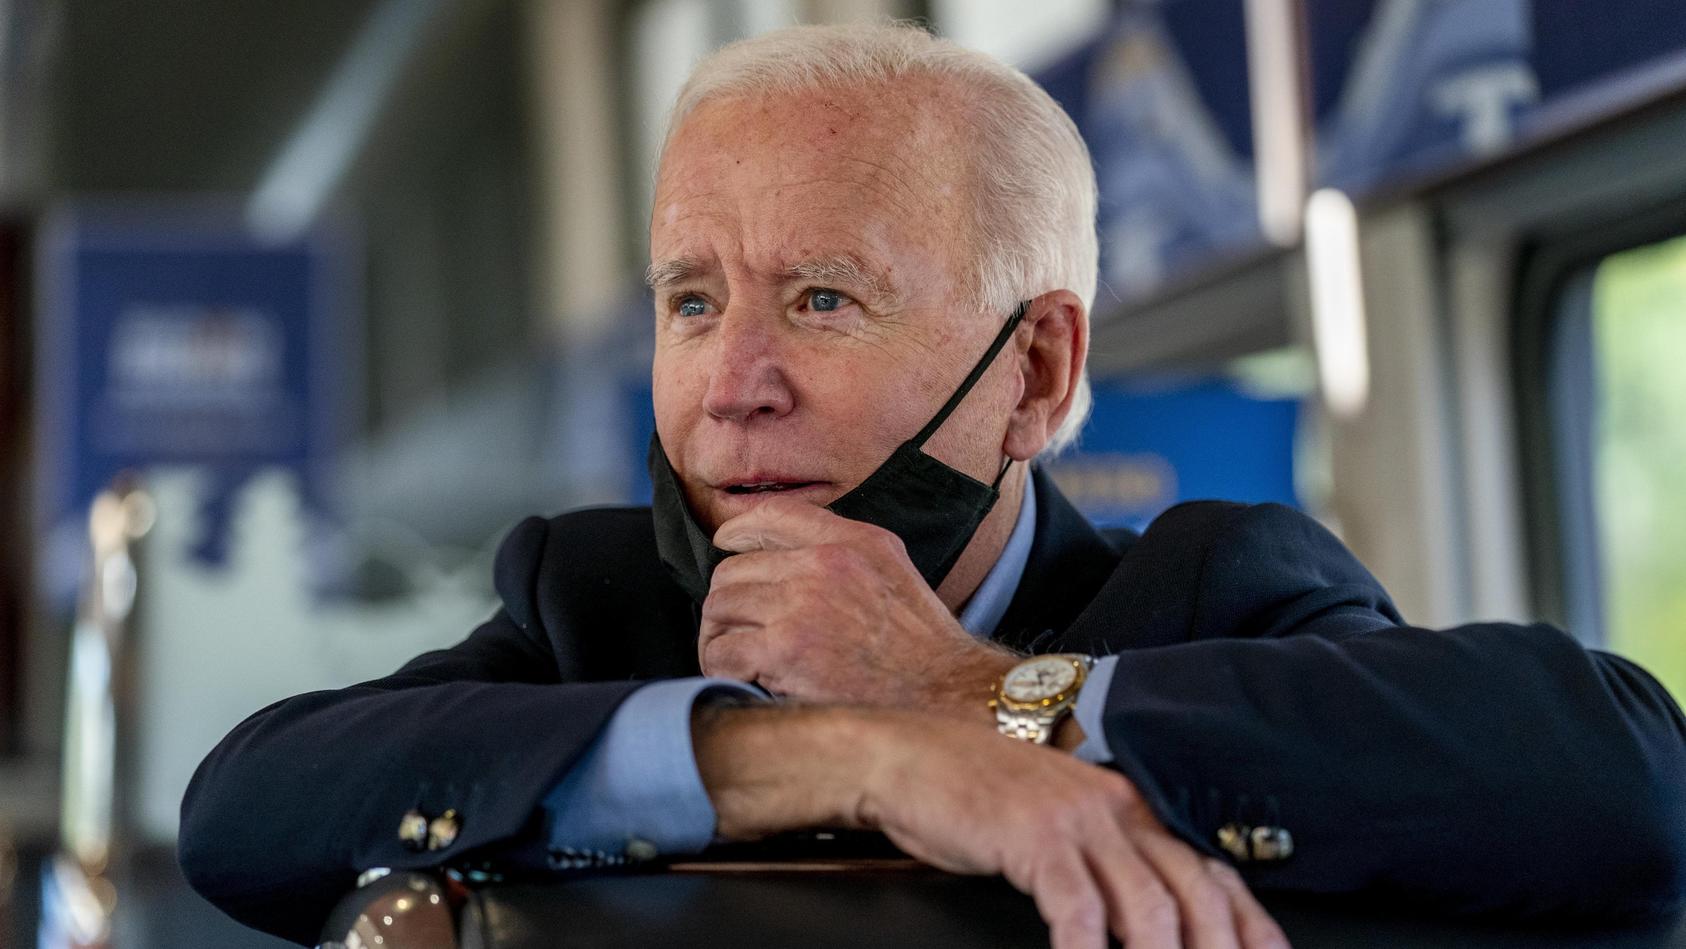 30.09.2020, USA, Alliance: Joe Biden, Präsidentschaftskandidat der Demokraten, sitzt mit Mund-Nasen-Schutz in einem Zug, der nach Pittsburgh fährt, und spricht mit dem Präsidenten der Vereinigten Stahlarbeitergewerkschaft, Conway. Biden befindet sich